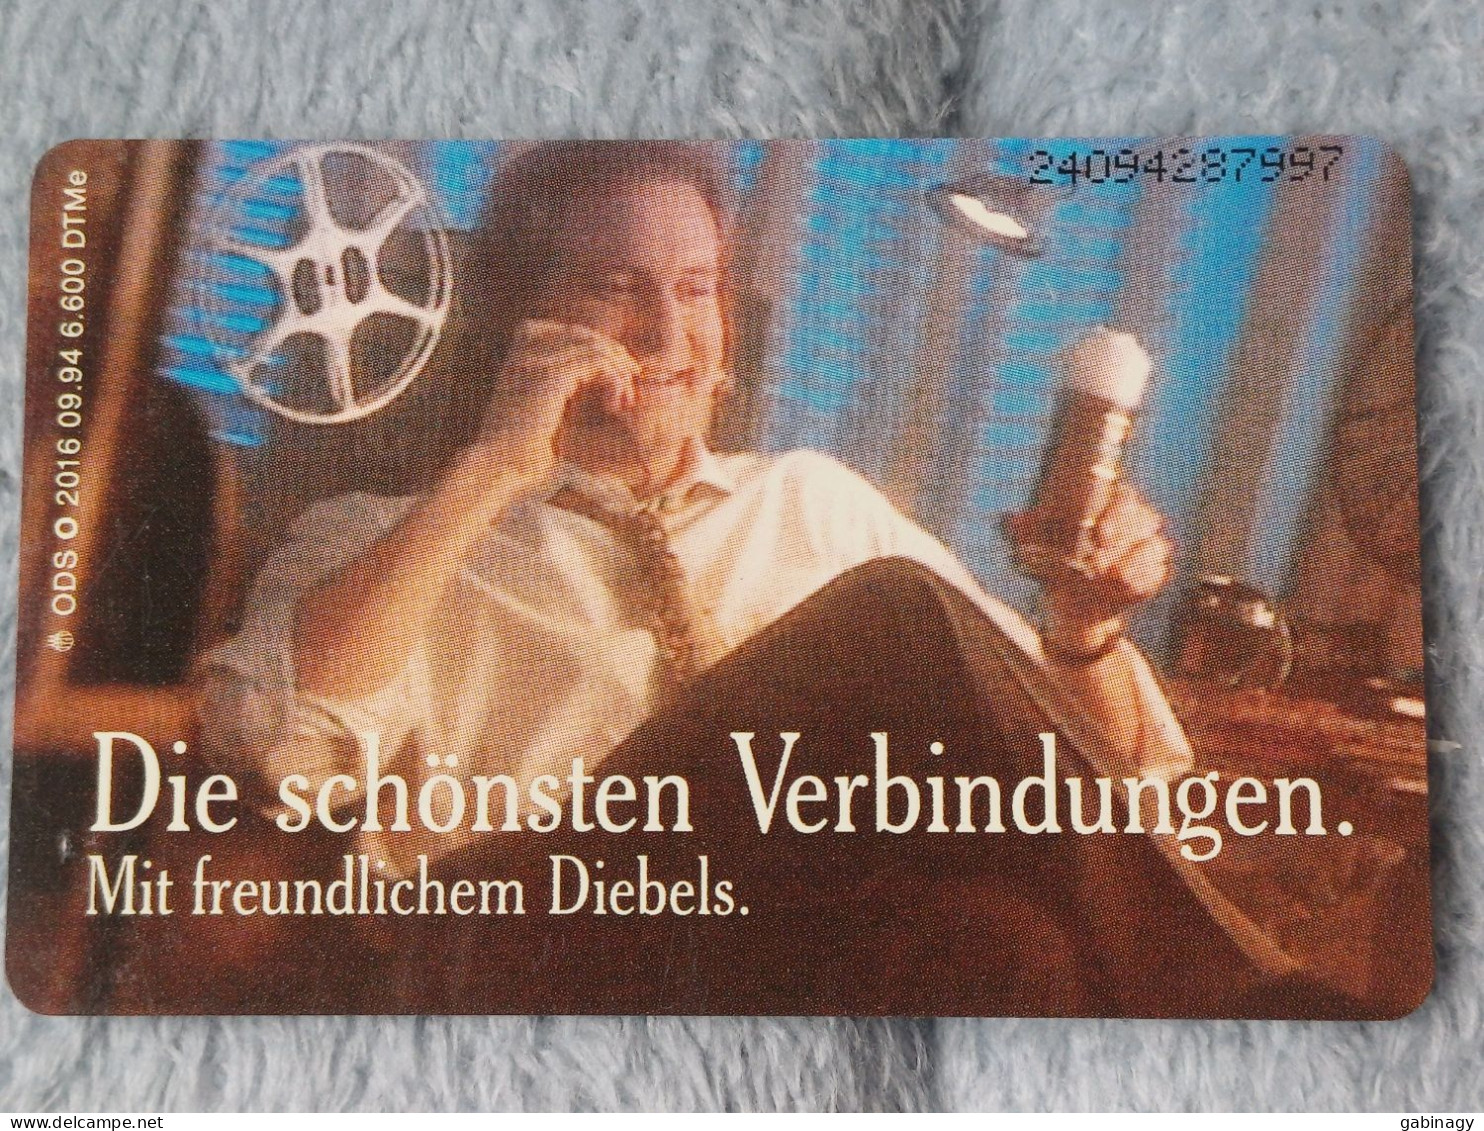 GERMANY-1090 - O 2016 - Diebels Alt Bier 2 - Die Schönsten Verbindungen - BEER - 6.600ex. - O-Series: Kundenserie Vom Sammlerservice Ausgeschlossen